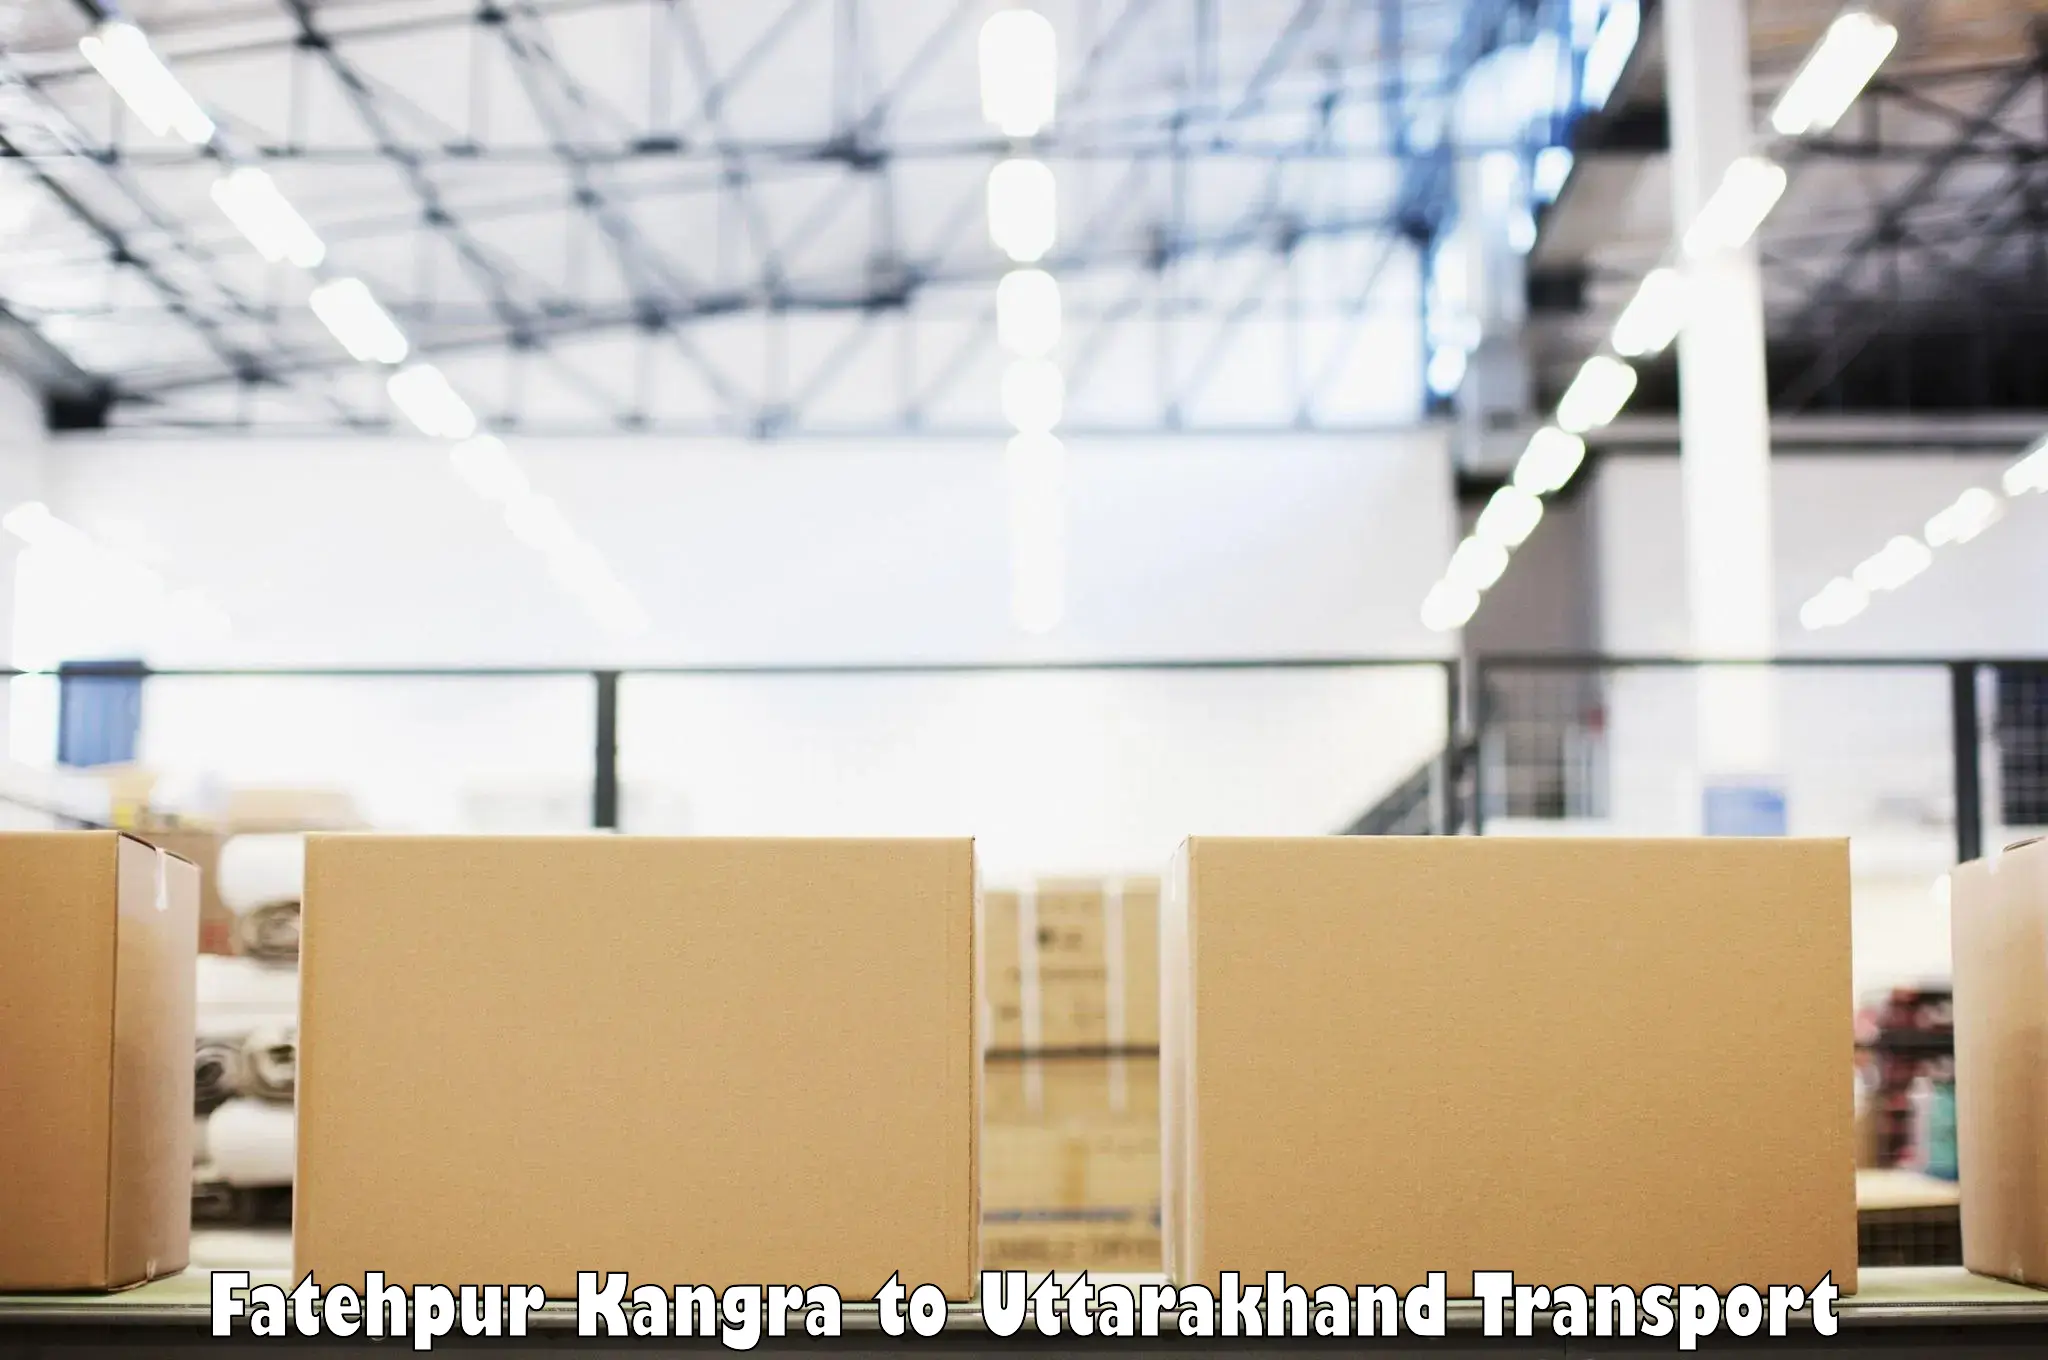 Shipping partner Fatehpur Kangra to Pithoragarh